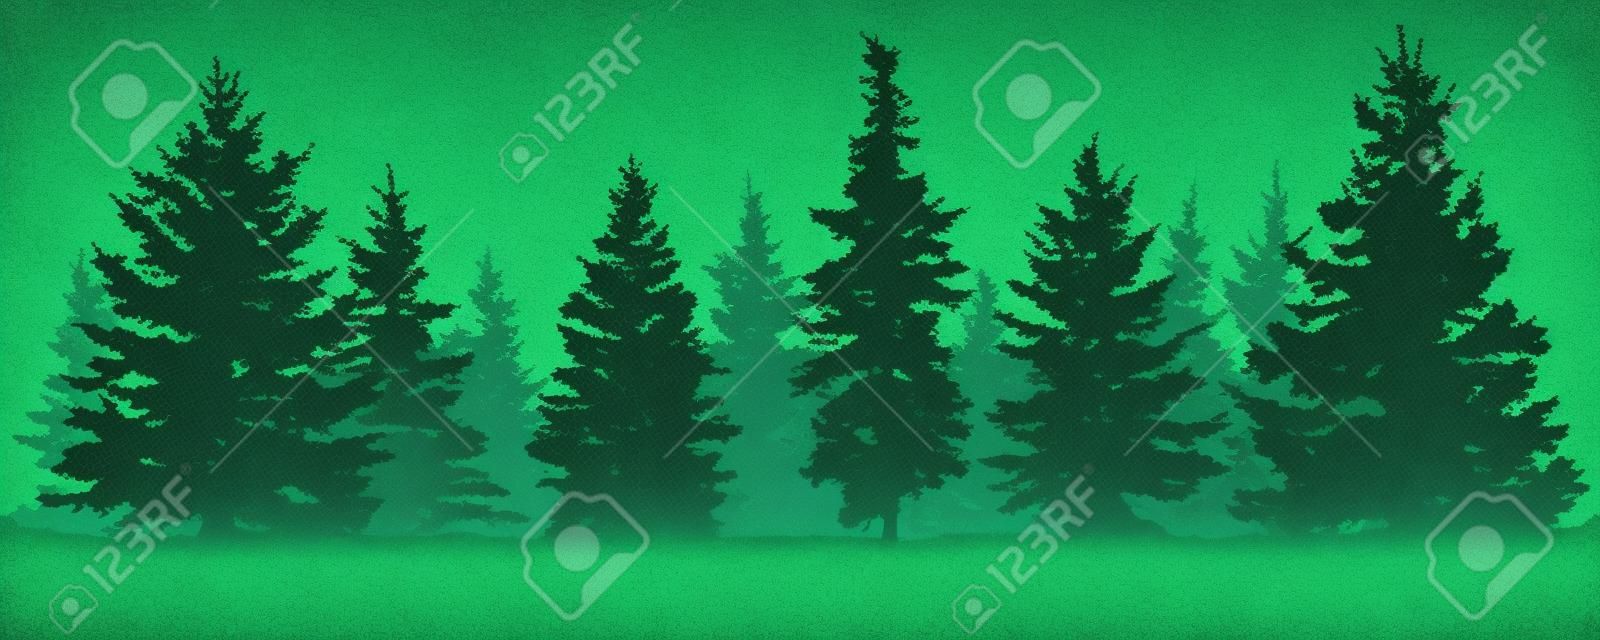 Waldtannenbaumschattenbild. Nadelgrüne Fichte. Vektor auf weißem Hintergrund